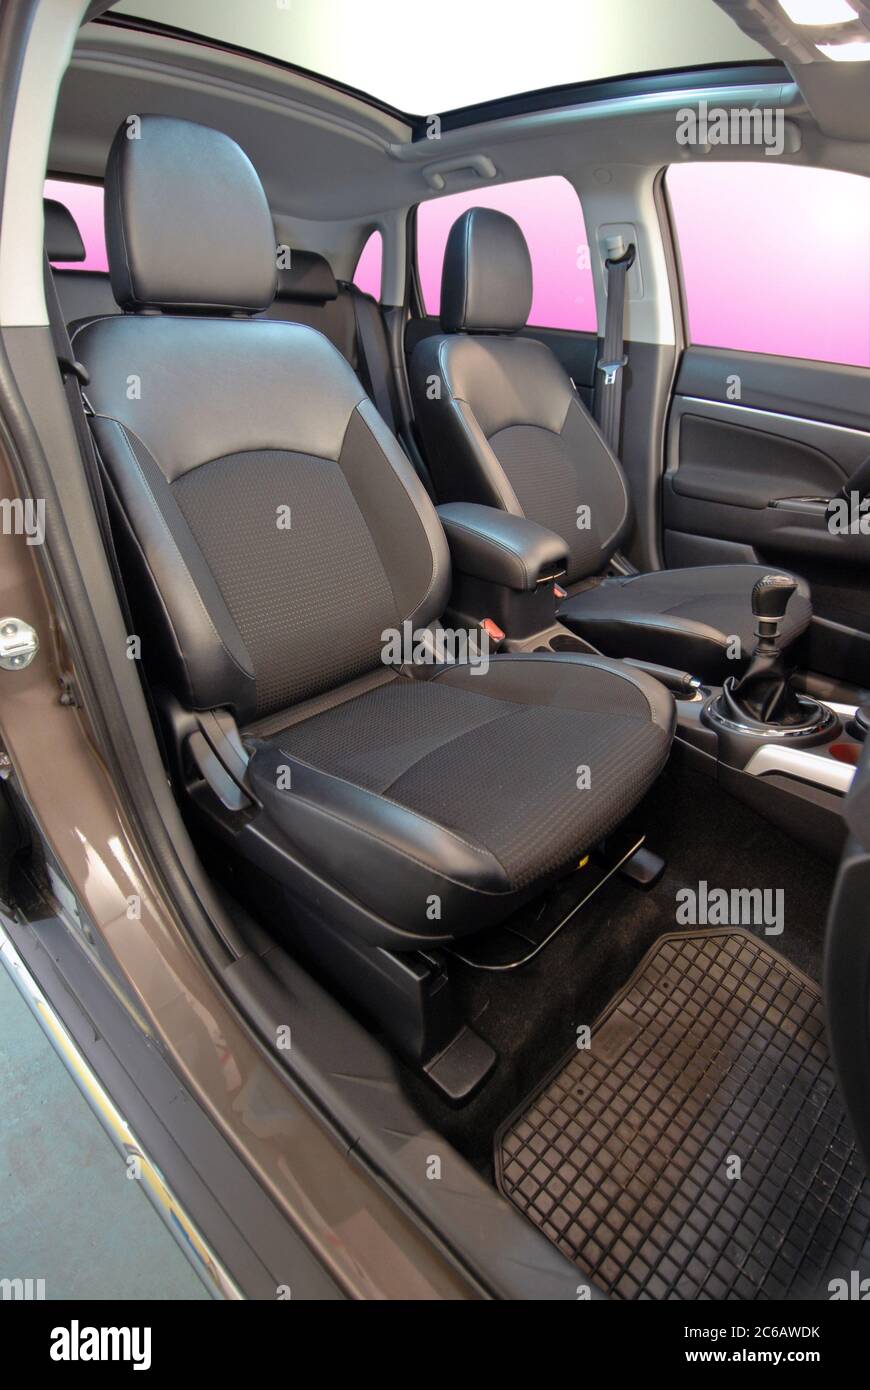 Memory foam sciatica cushion in car driver seat Stock Photo - Alamy